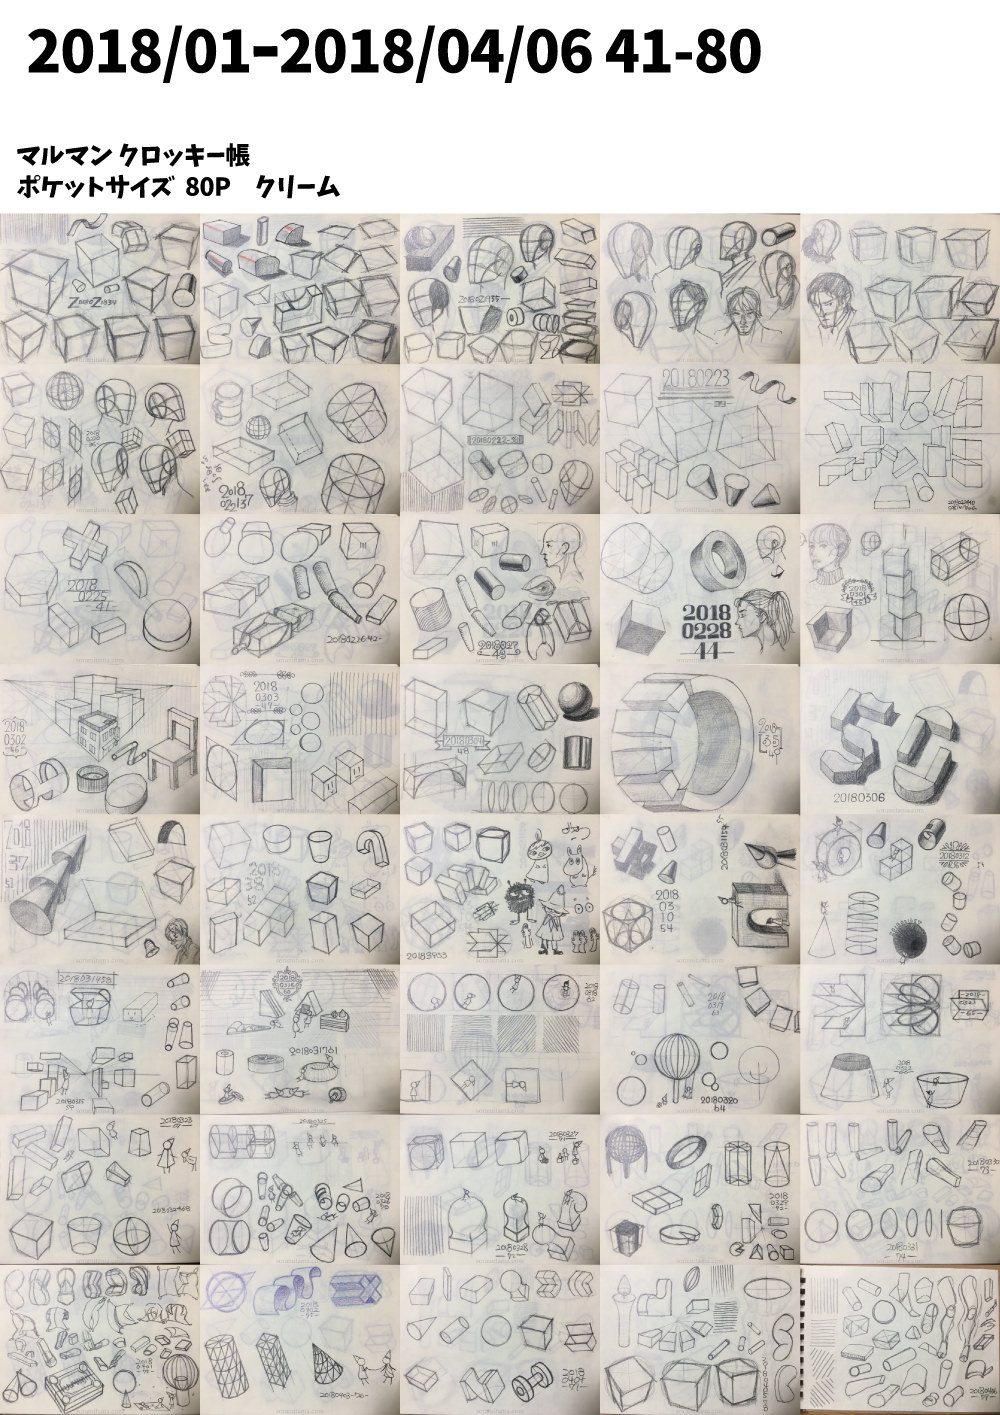 クロッキー帳001 描いた絵の記録 ポケットサイズ 18 01 18 04 描くラボ